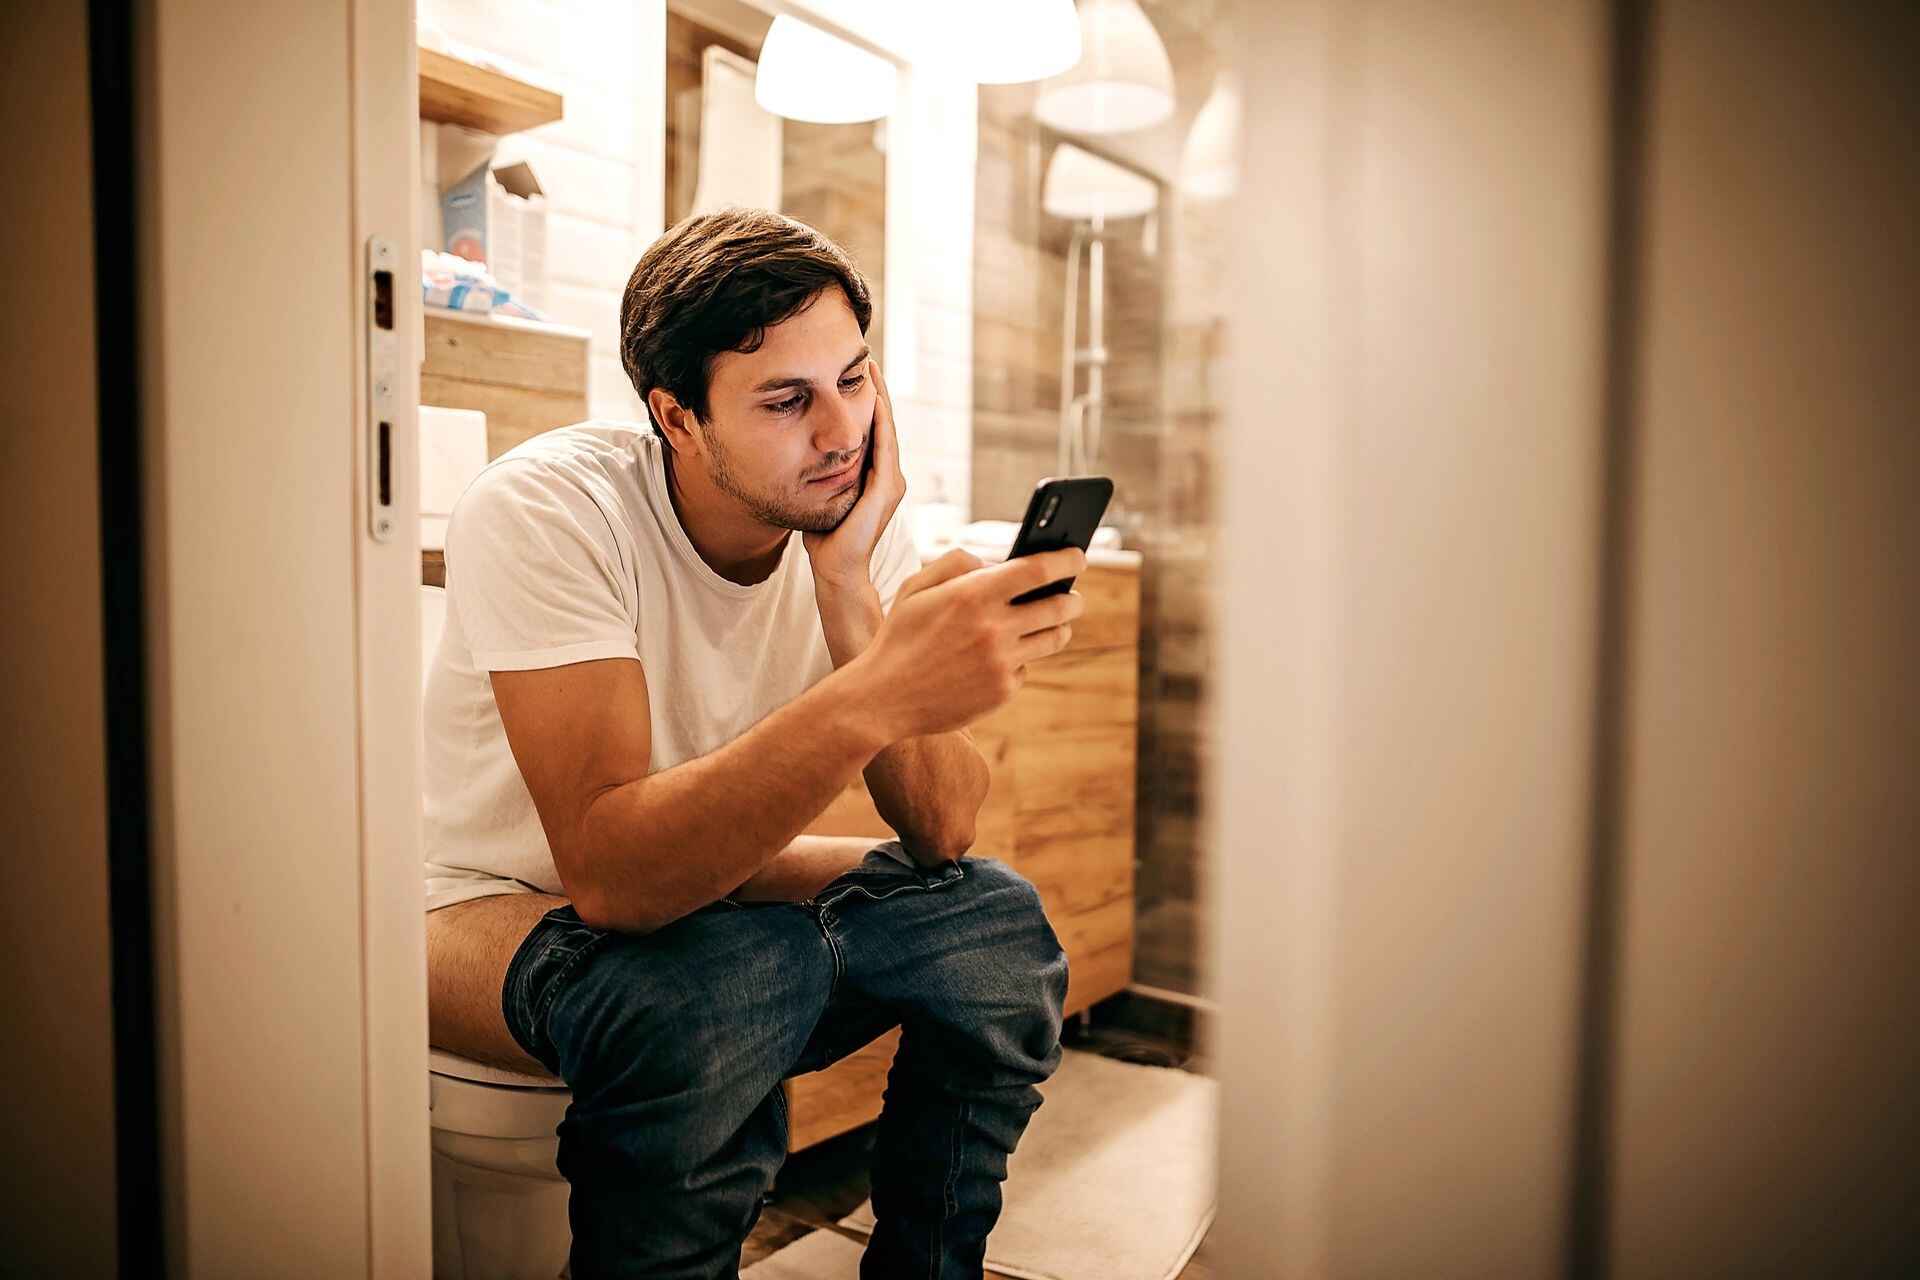 Usar el celular en el baño: por estas razones se debería evitar